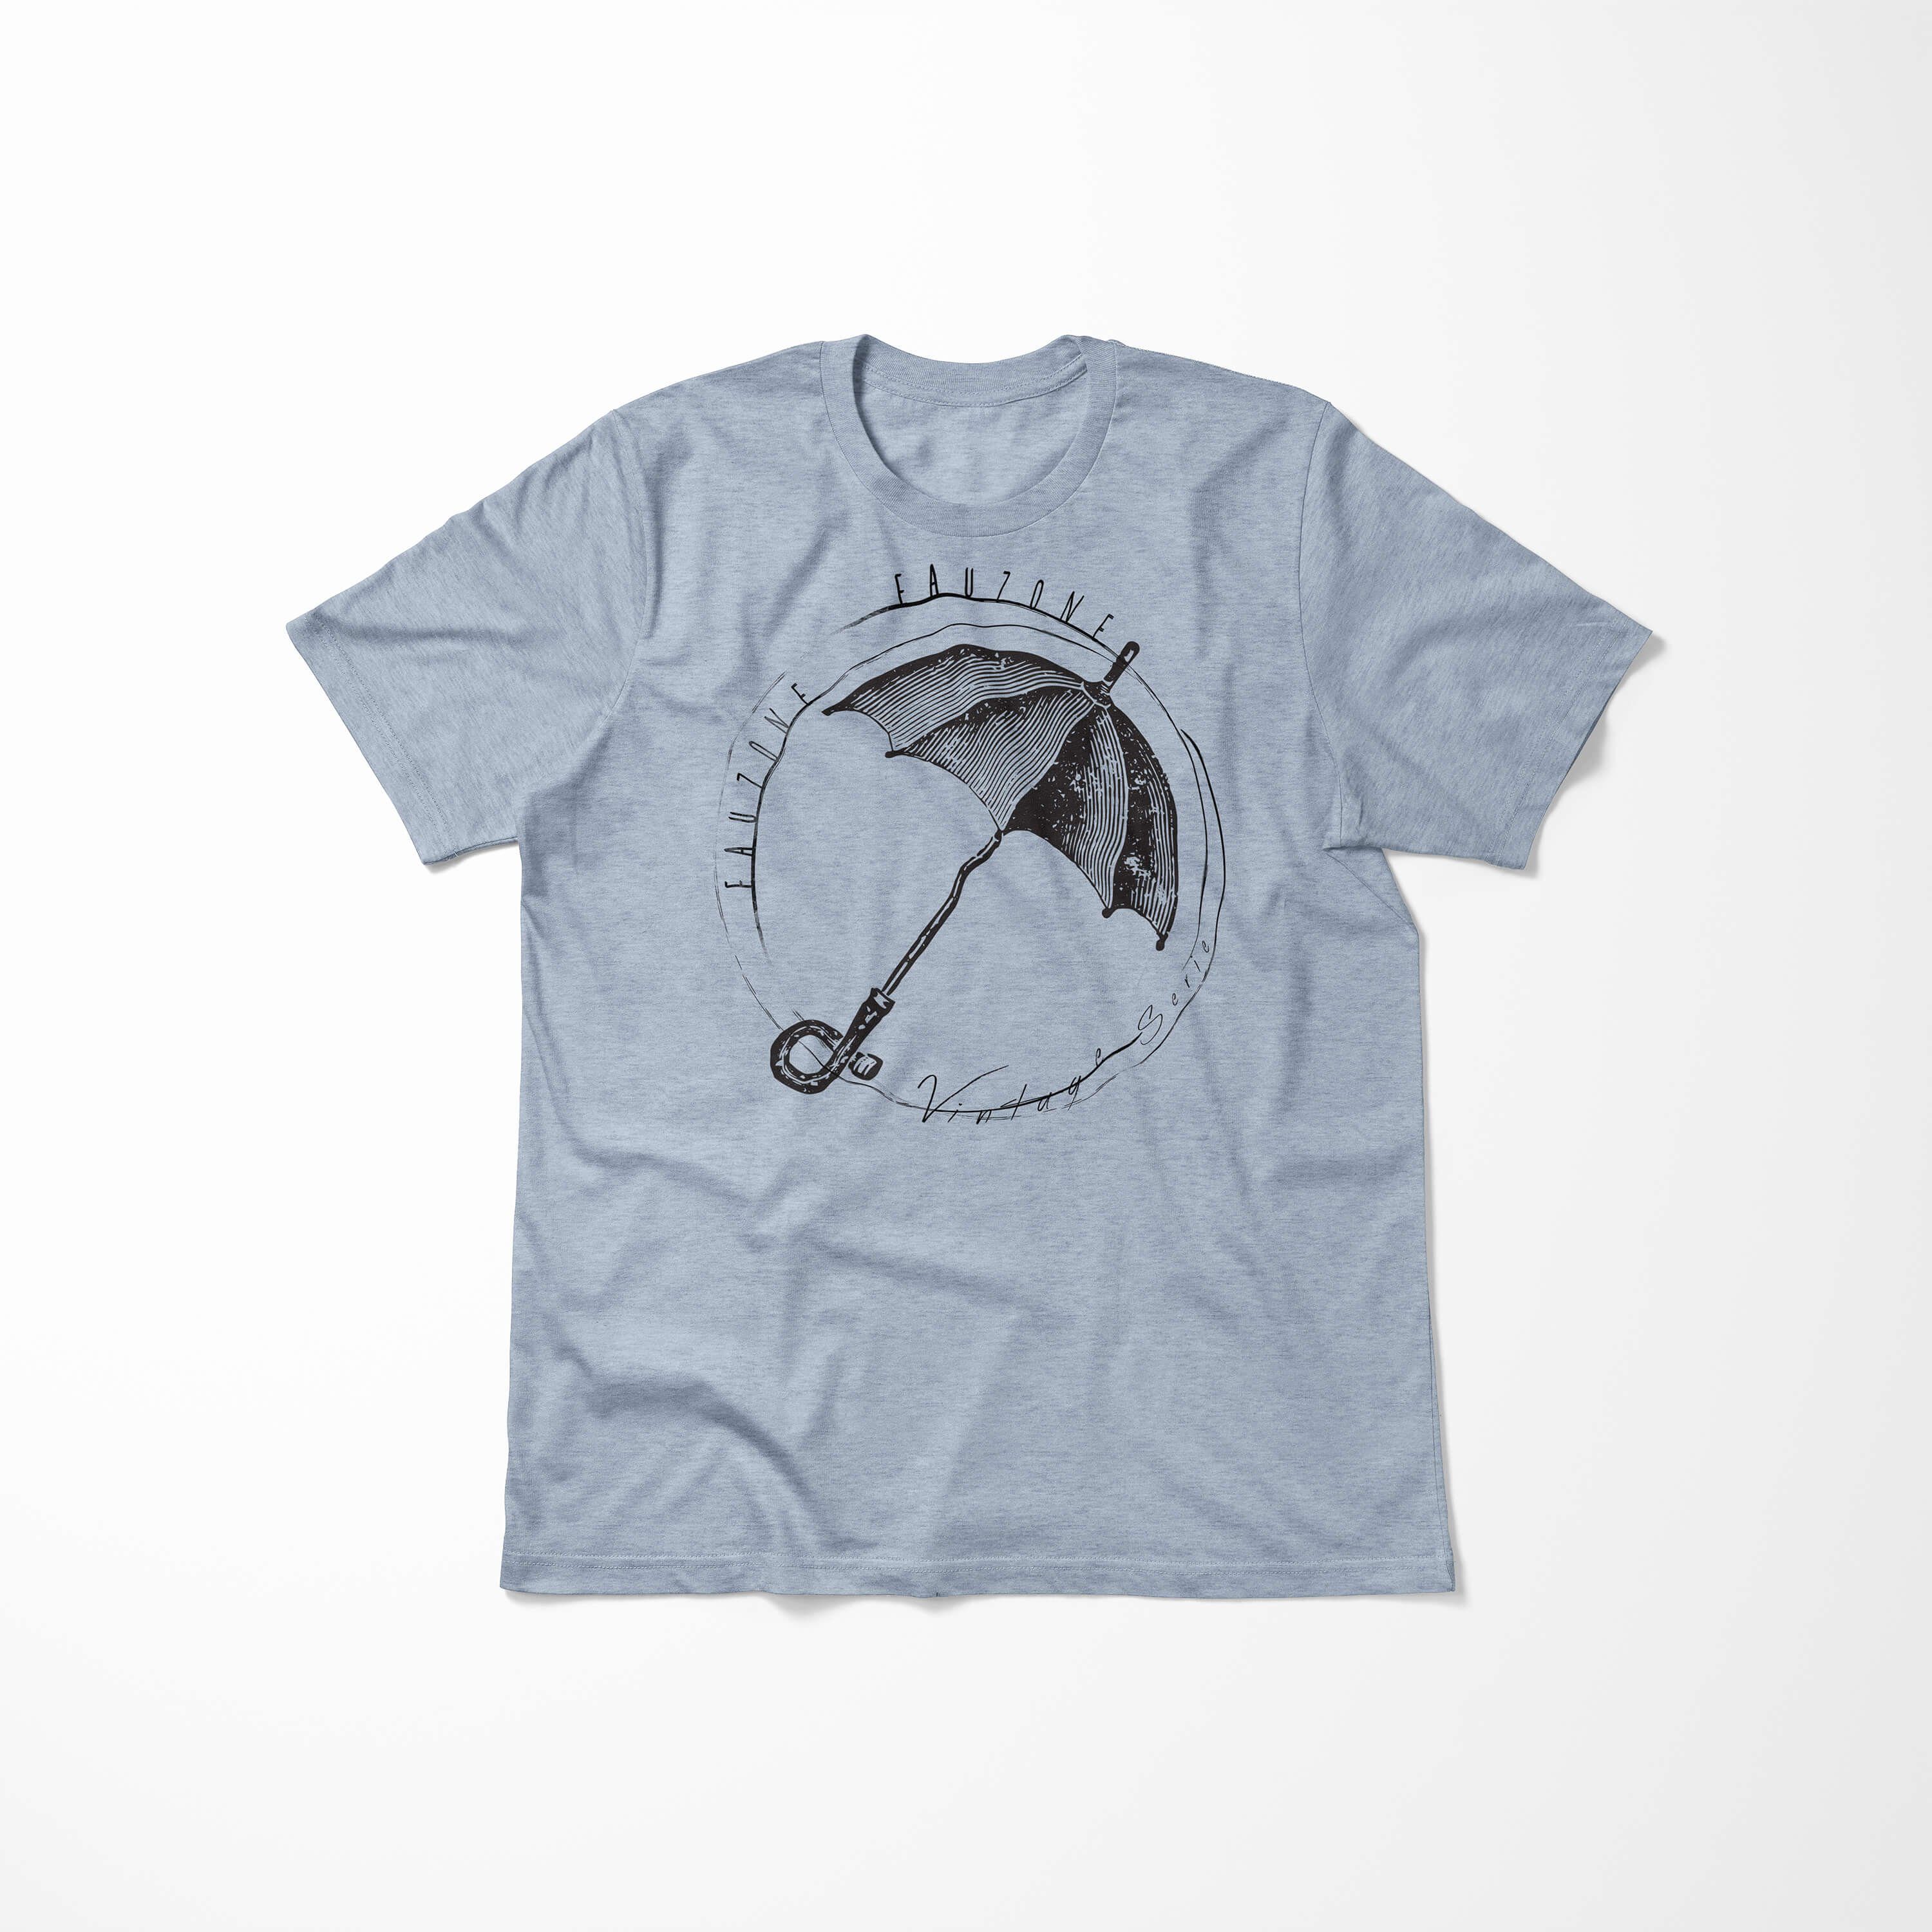 Sinus Art T-Shirt Vintage Herren Regenschirm T-Shirt Stonewash Denim